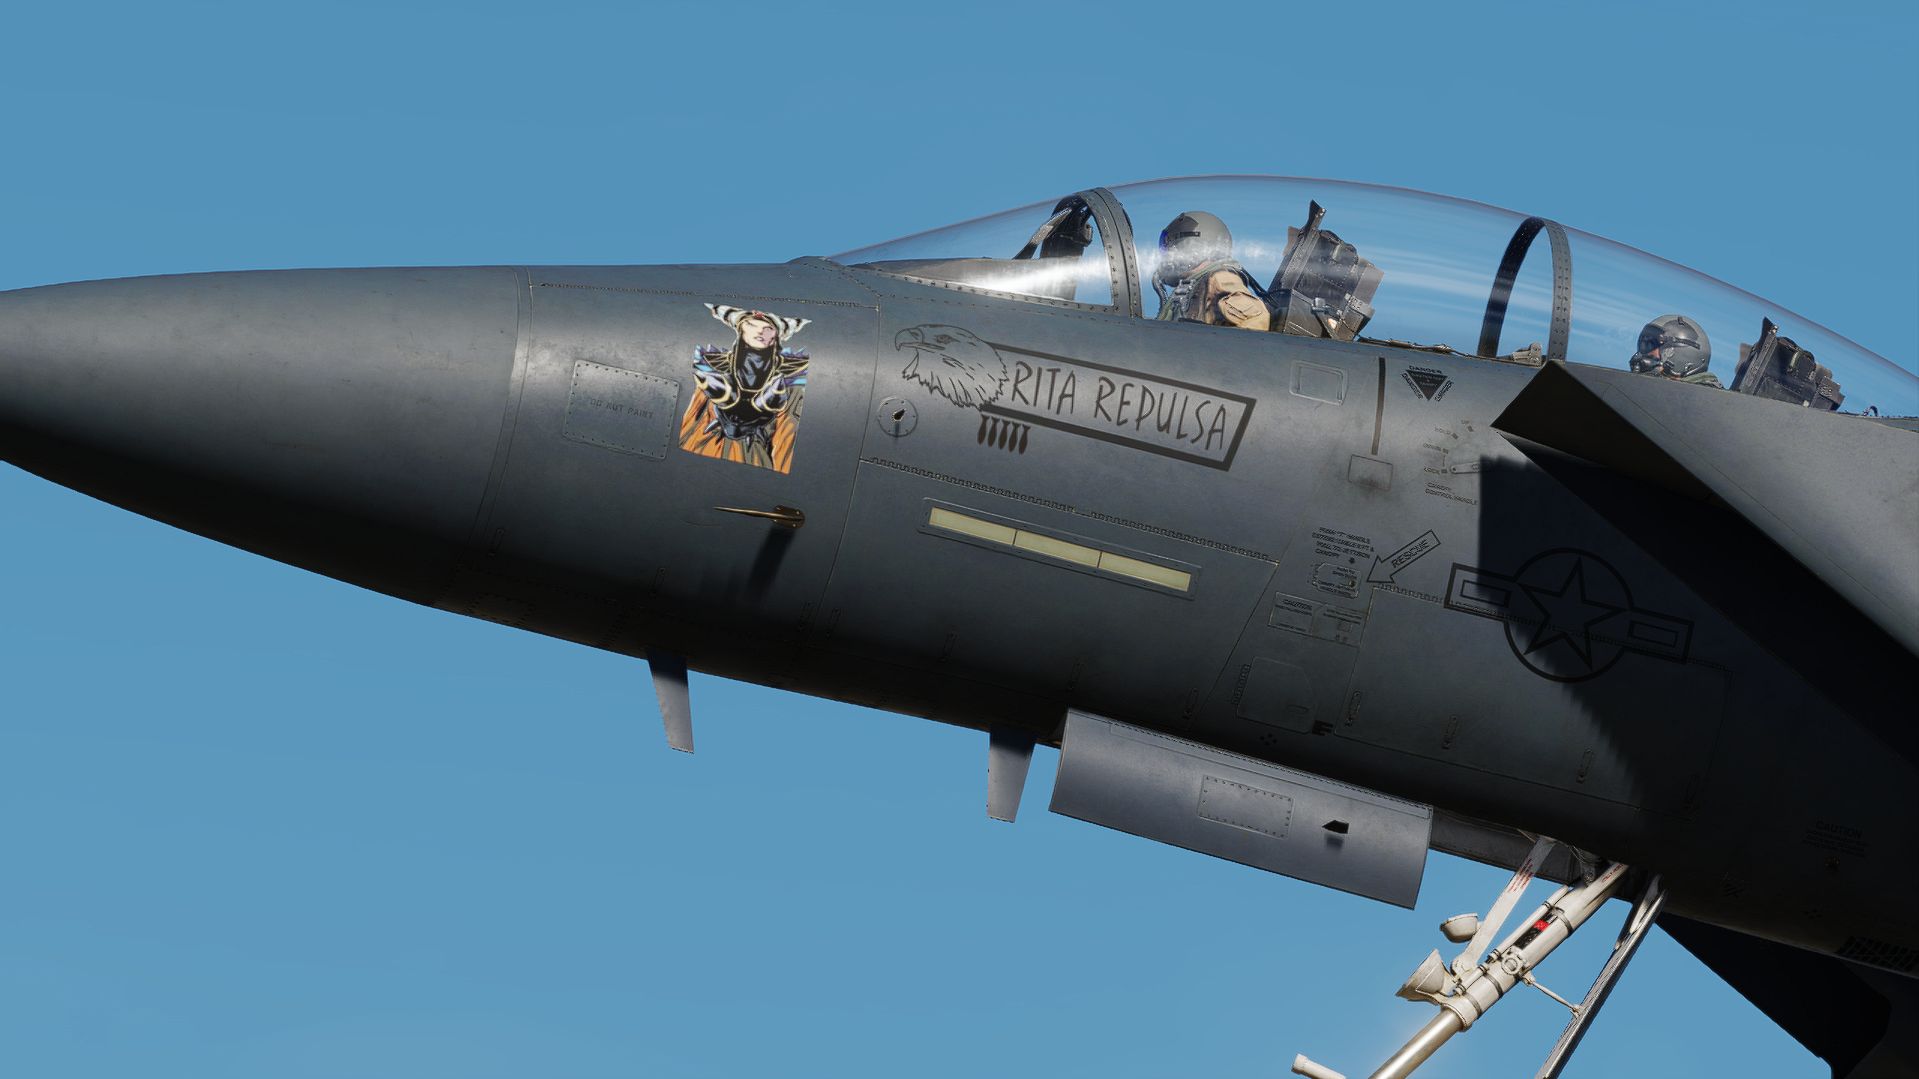 F-15E Strike eagle LN 96-204 "RITA REPULSA"